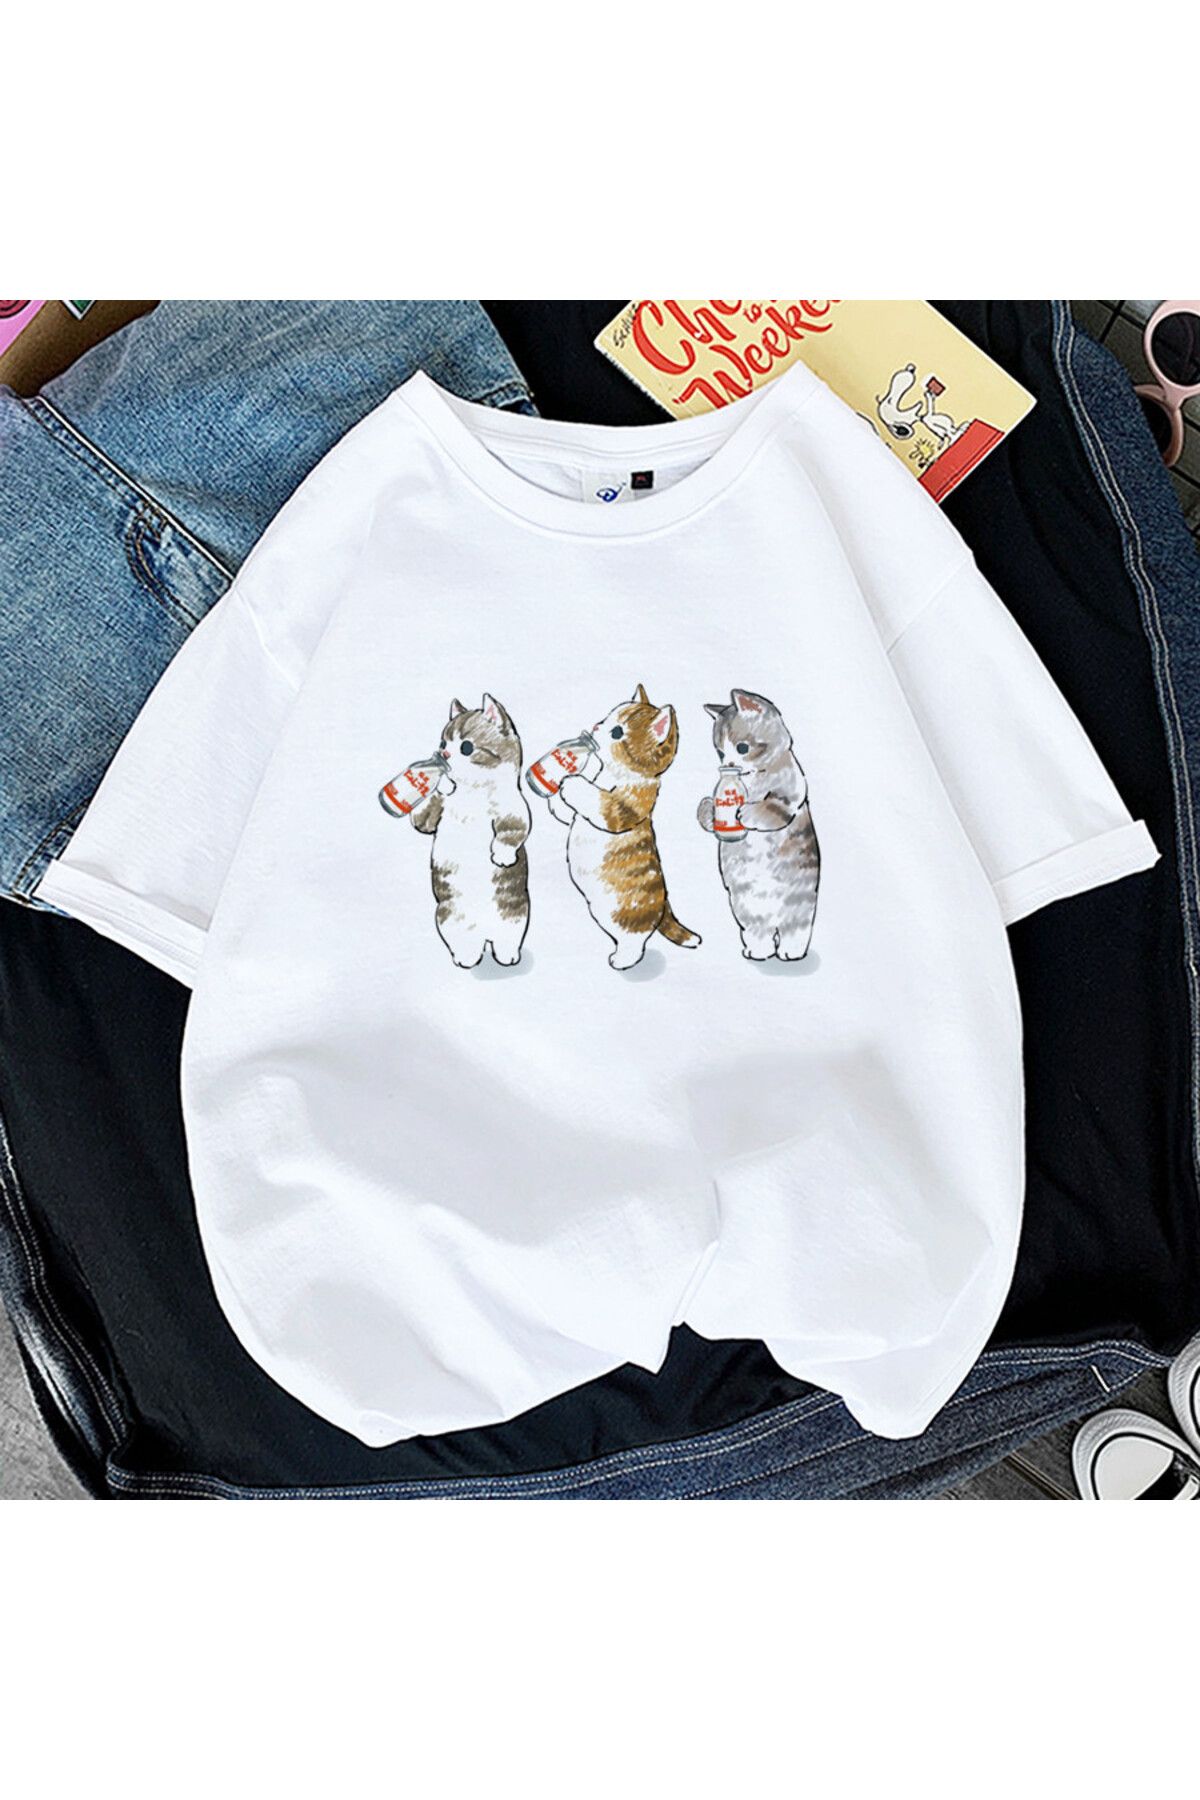 GALASHOP Kedi Kadın baskı komik tişört Model91